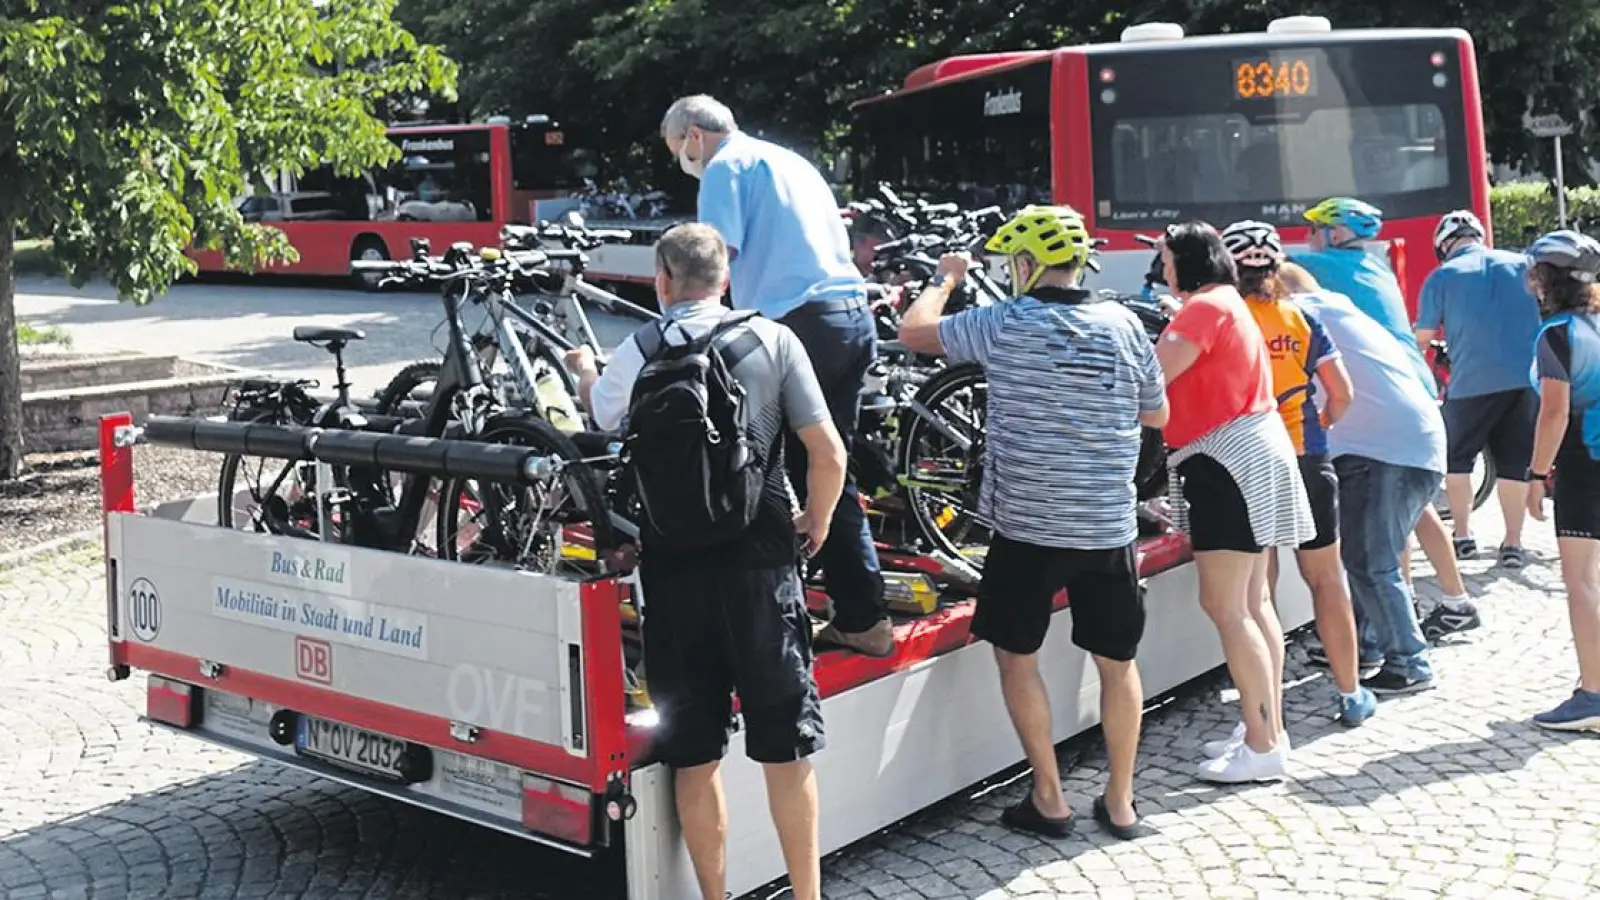 Lokalnachrichten in Bayreuth: Fahrradbus stärkt Fränkische Schweiz (Foto: Landkreis Bayreuth)